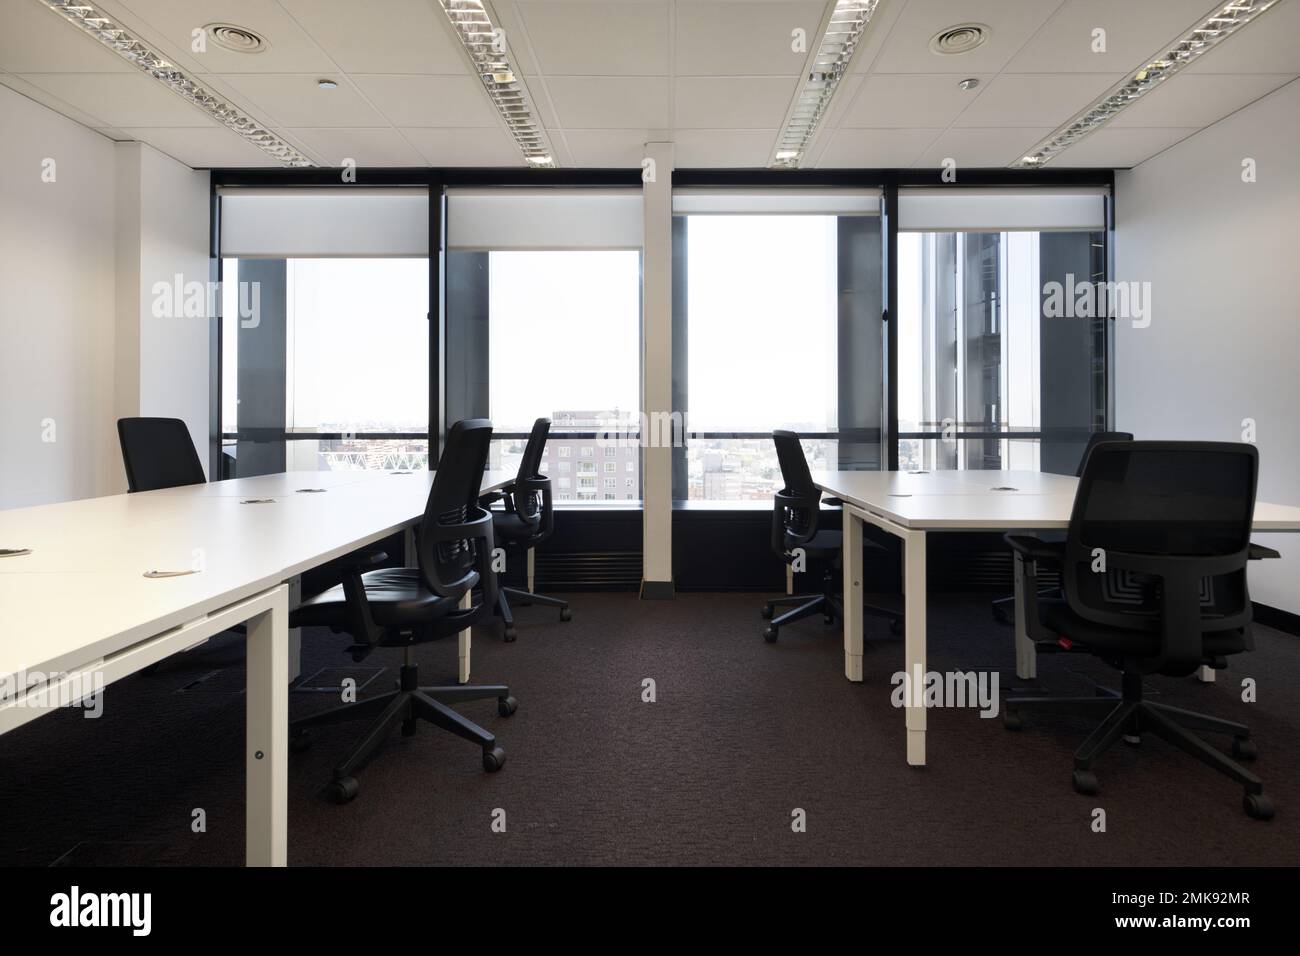 Tavoli da ufficio con sedie girevoli nere in un ufficio con finestre che si affacciano sulla città Foto Stock